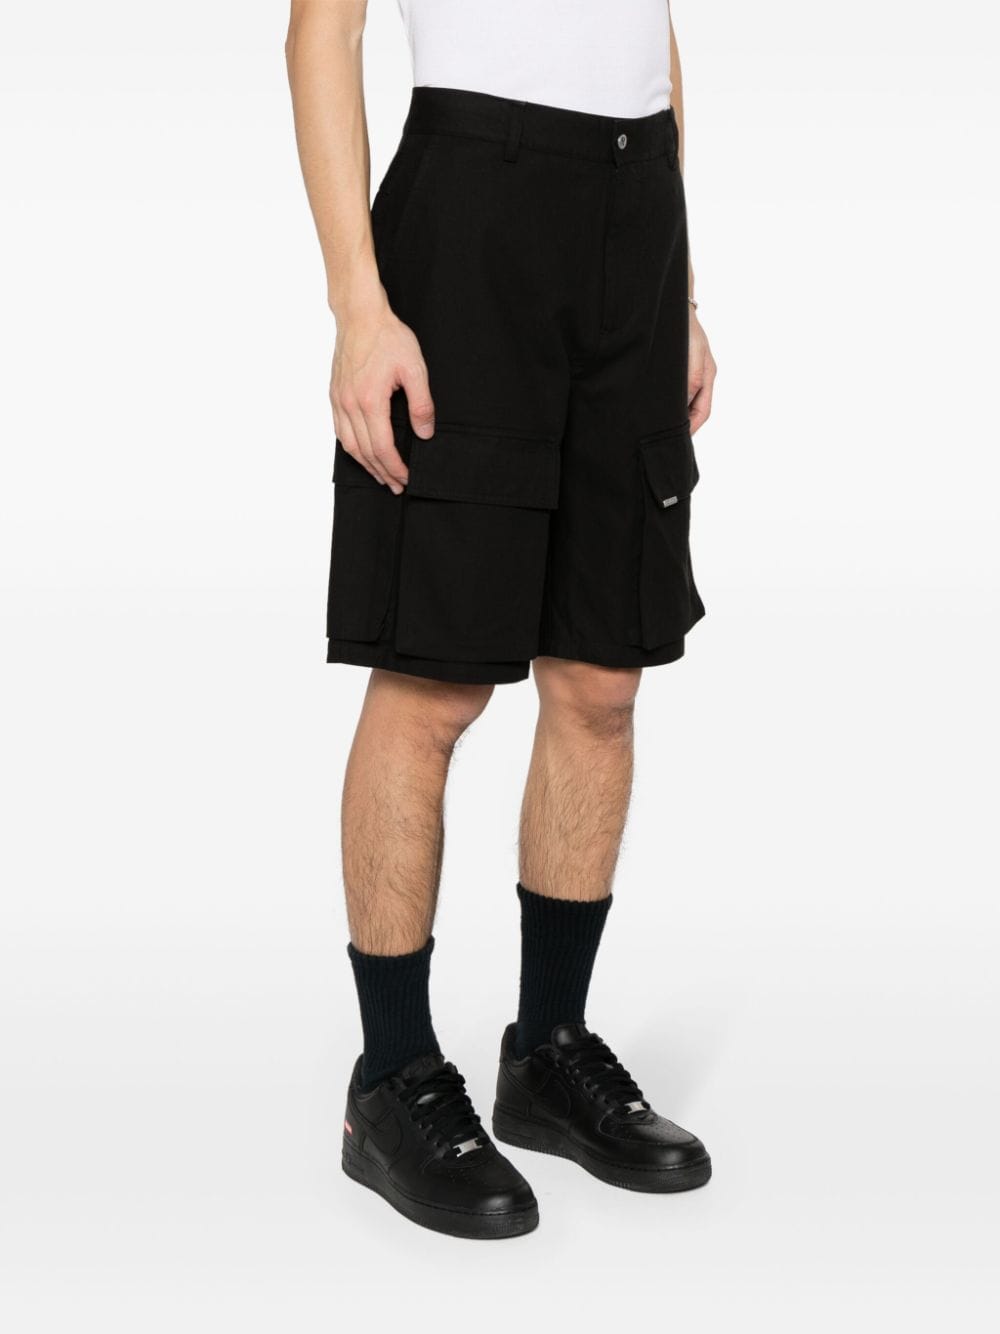 Black cargo shorts